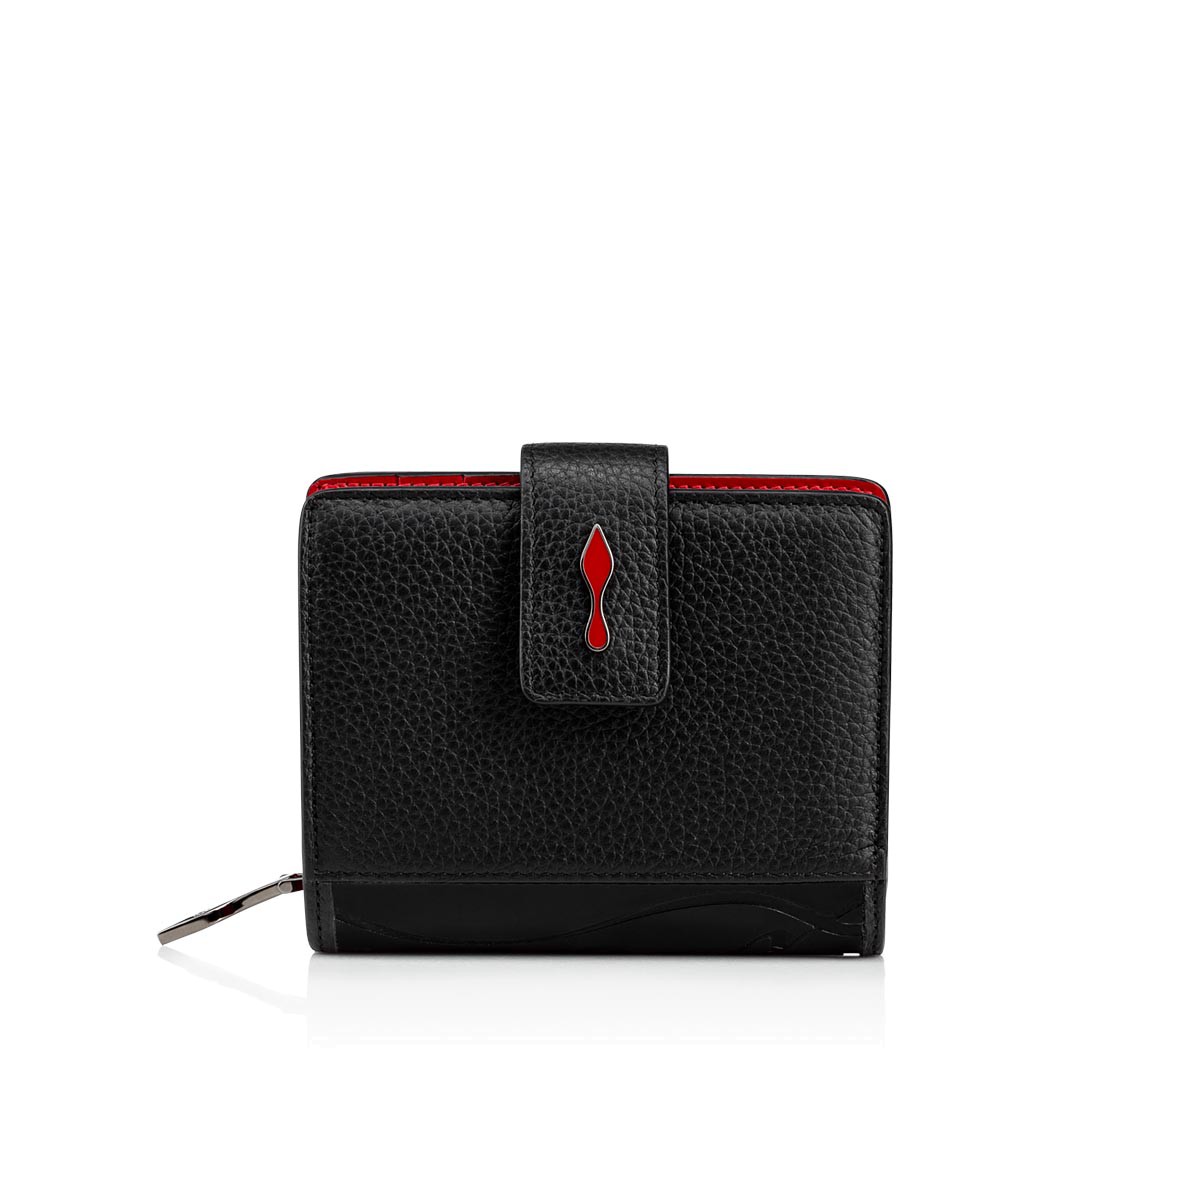 40代女性に人気の財布はChristian LouboutinのMini Walletです